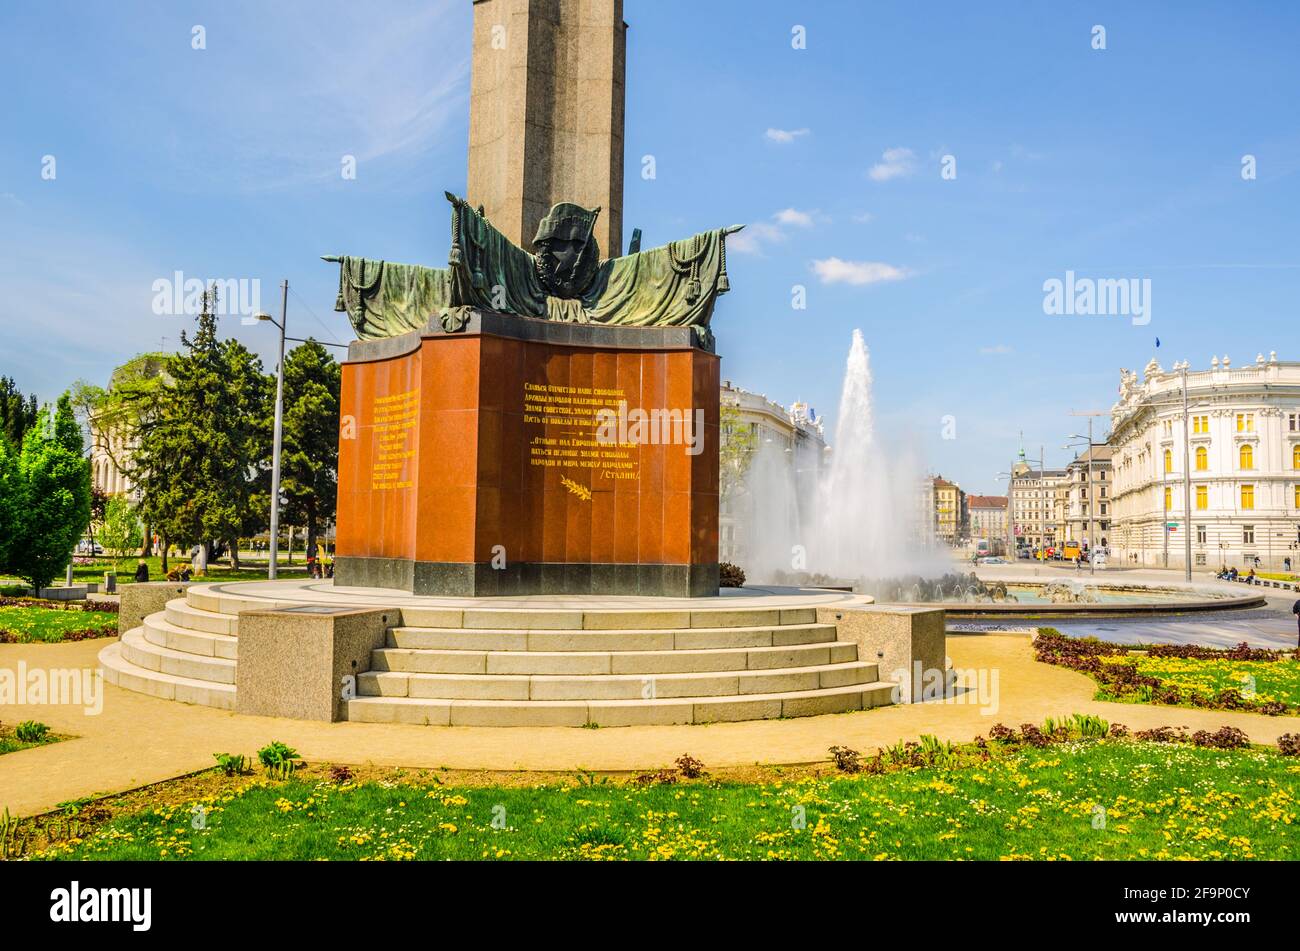 vista del monumento che esprime gratitudine all'esercito rosso che ha contribuito a preservare la pace in europa a vienna Foto Stock